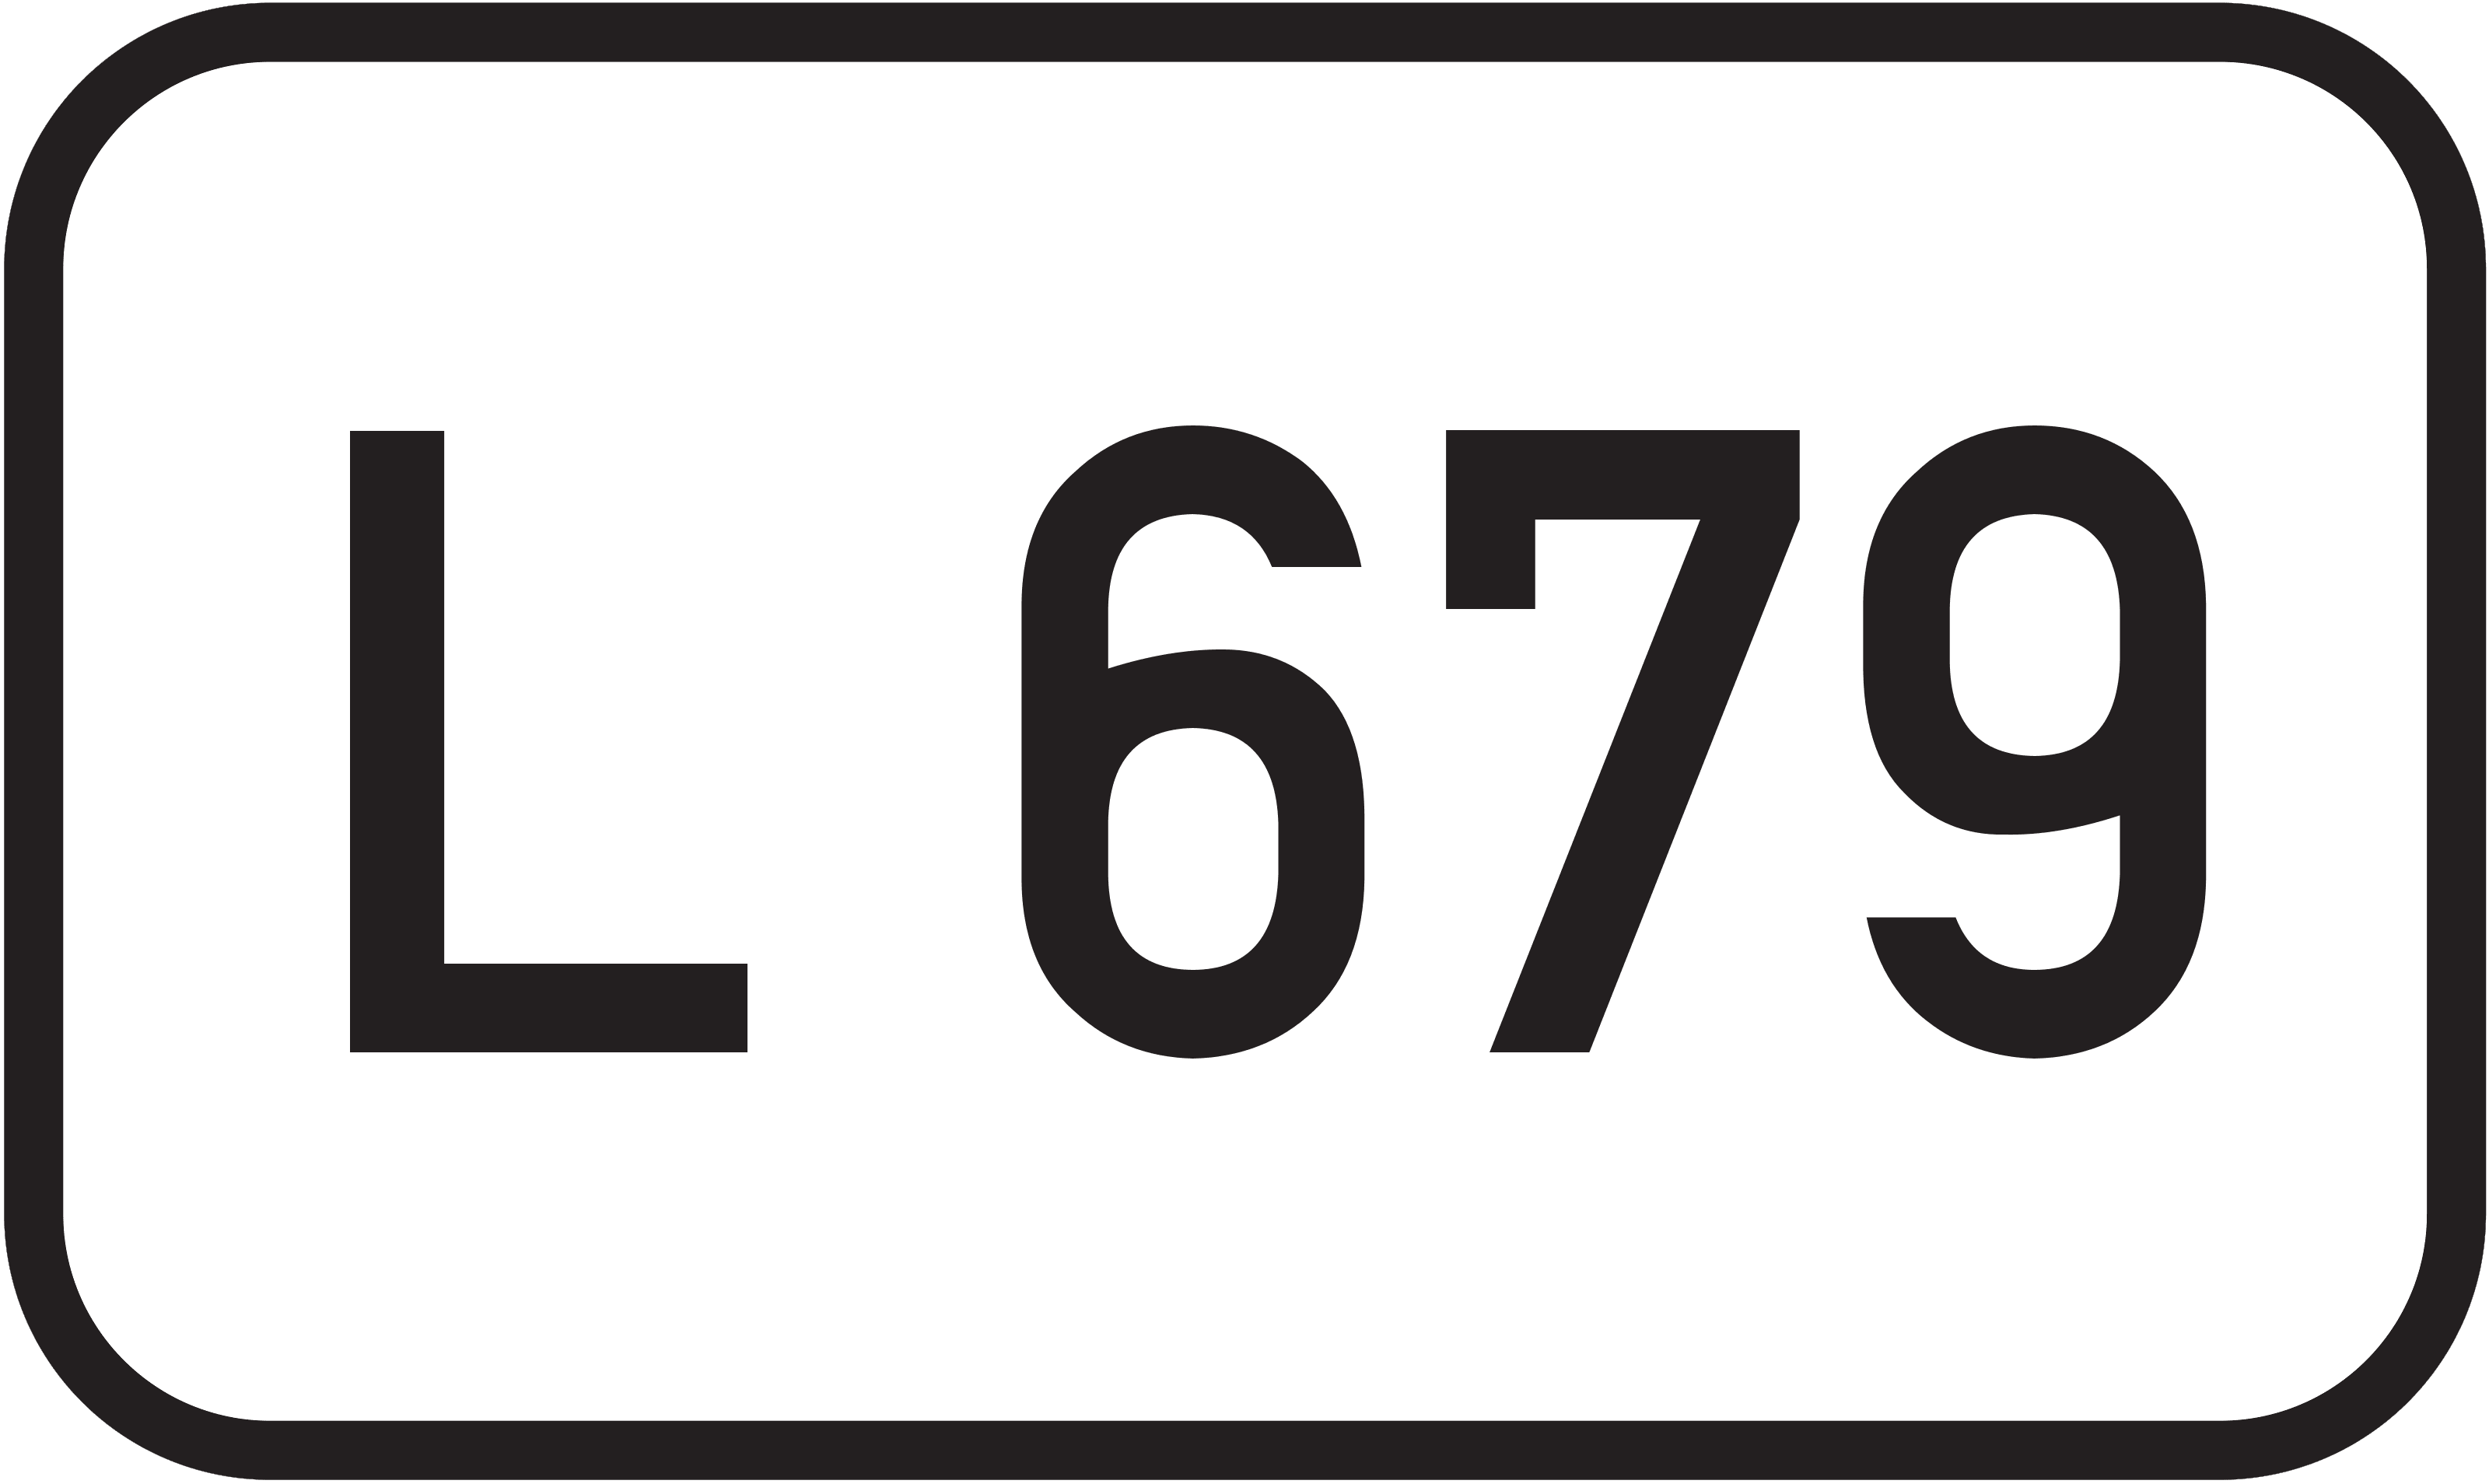 Landesstraße L 679